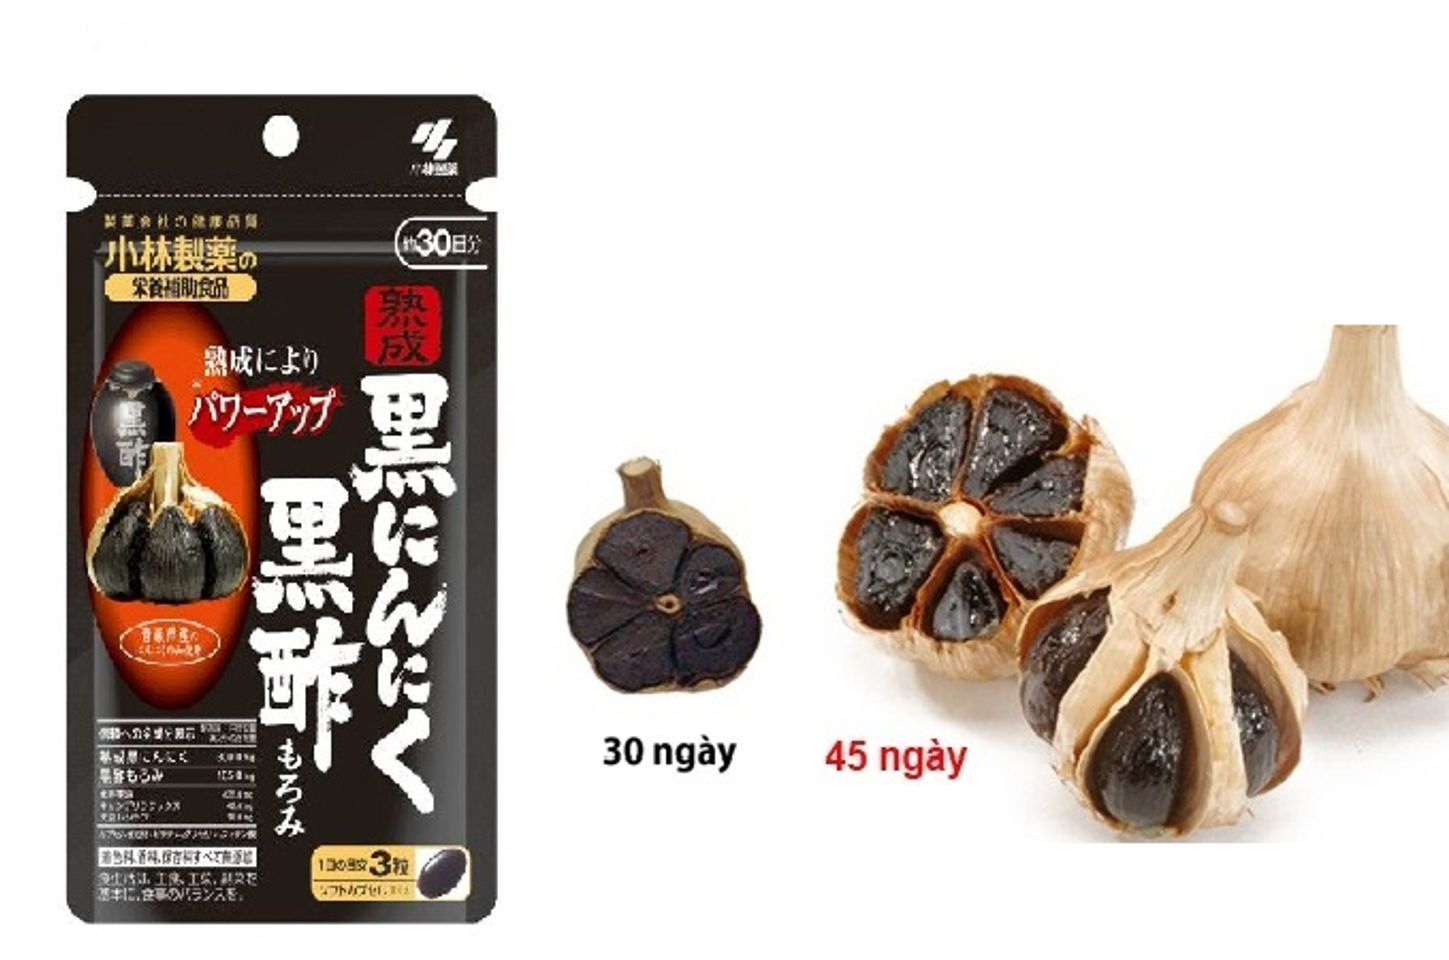 Viên tỏi đen Kobayashi Nhật Bản hàm lượng dinh dưỡng cao